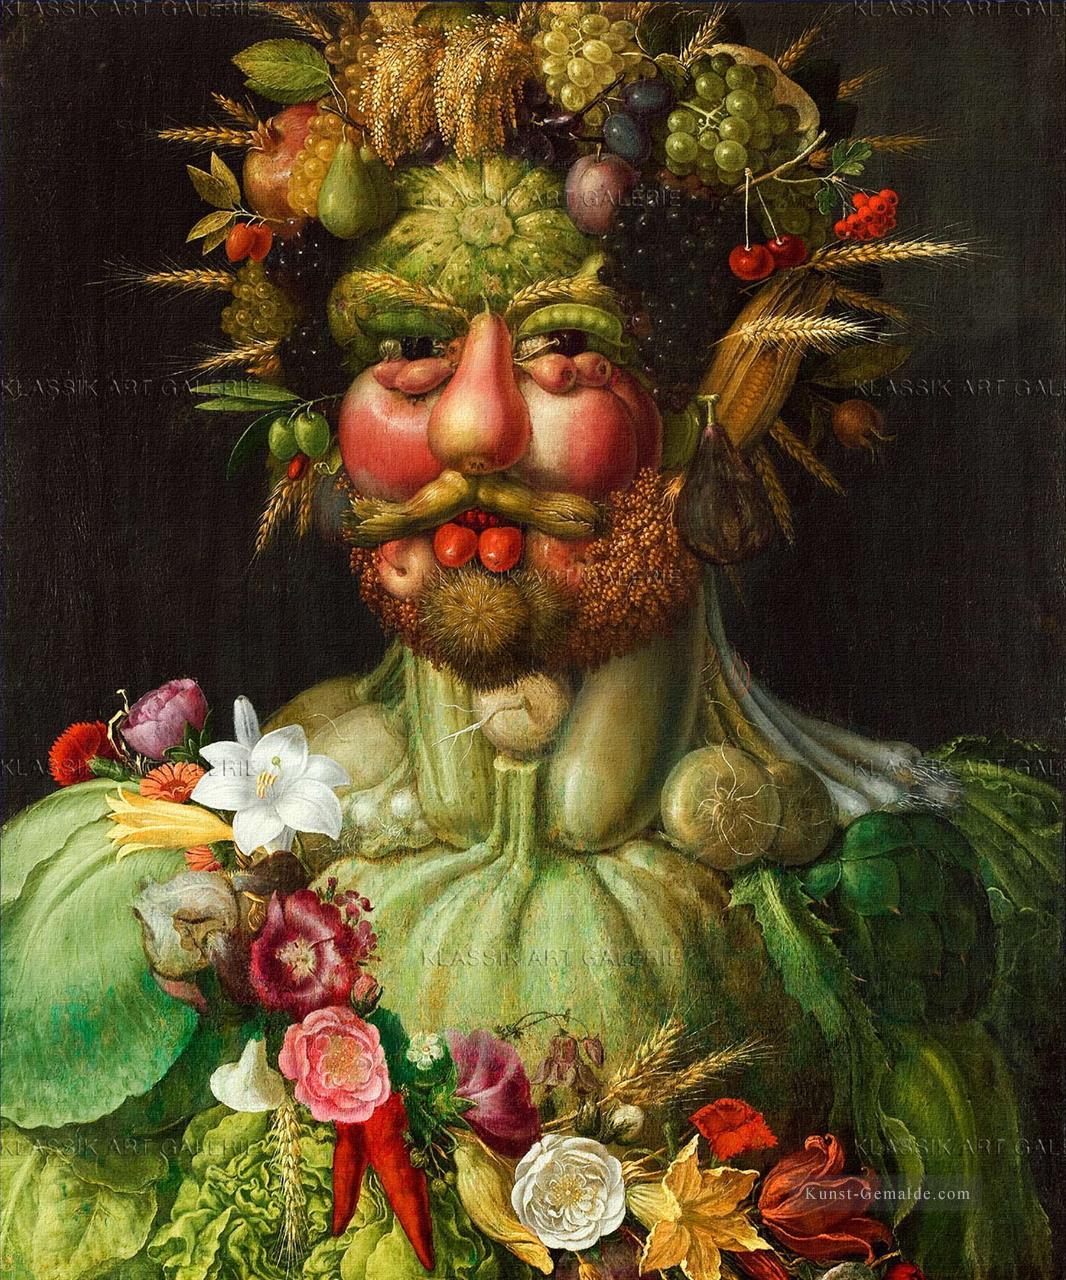 Mann von Gemüse und Blumen Giuseppe Arcimboldo Ölgemälde